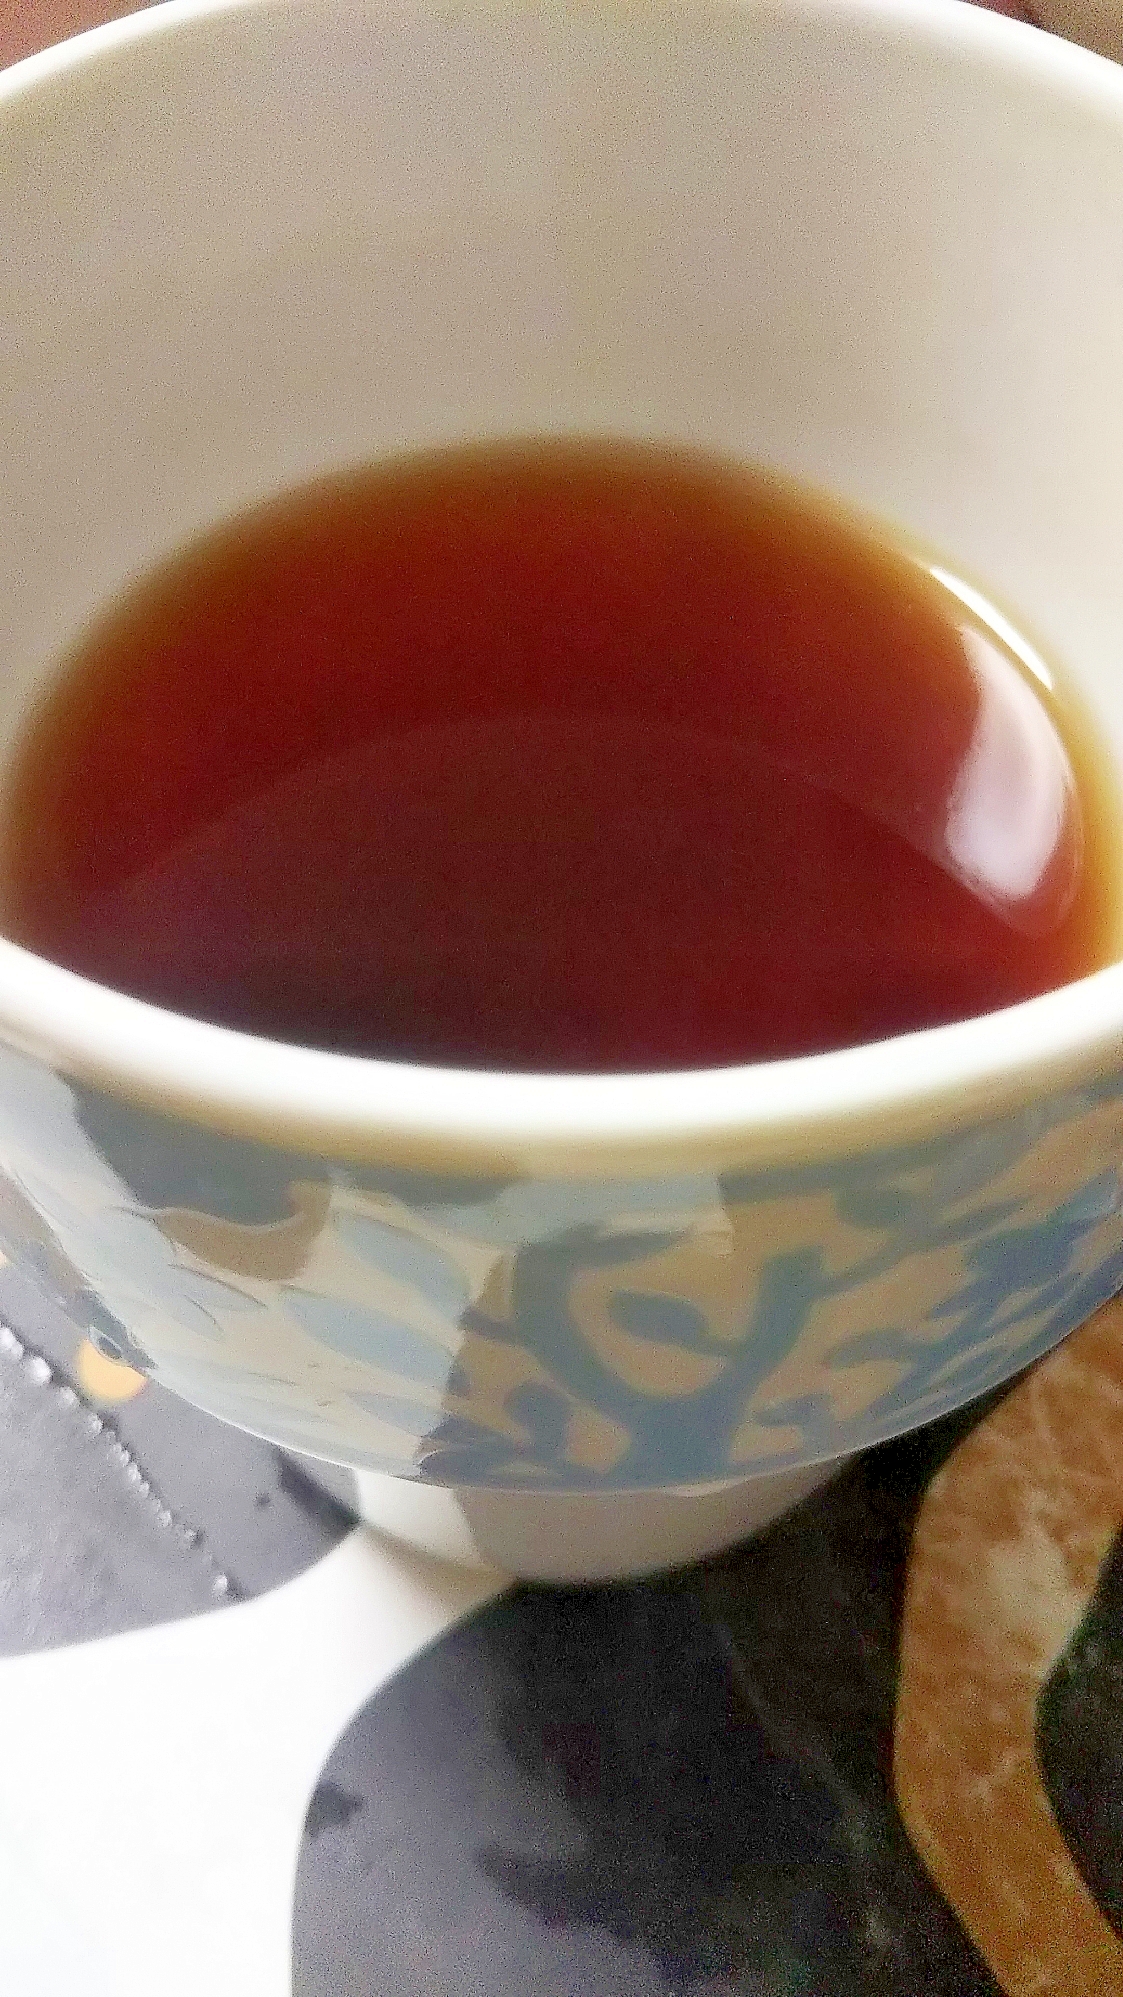 りんご酢×紅茶